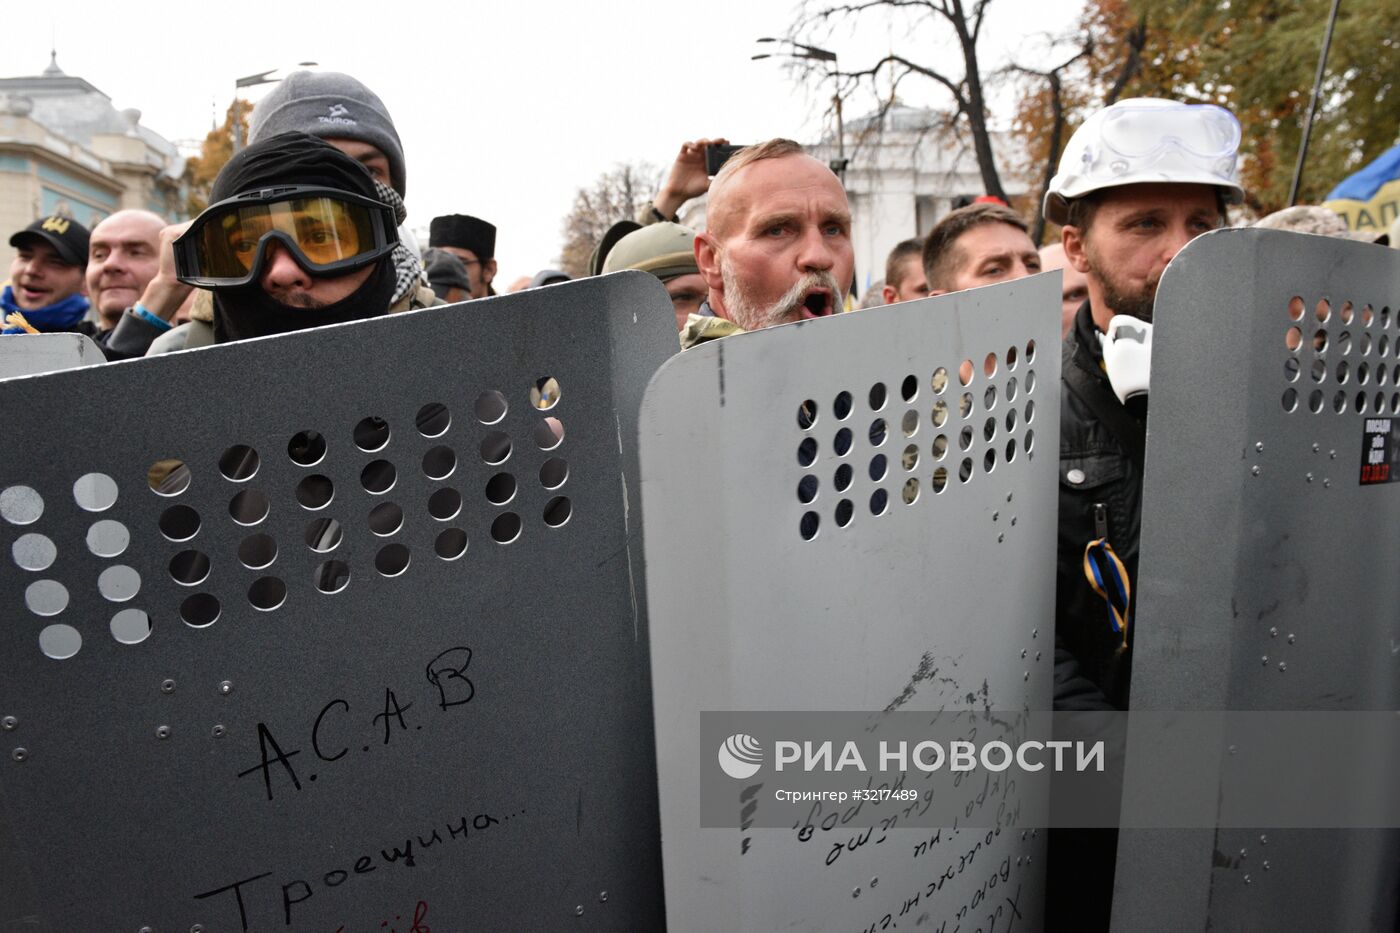 Митинг у здания Верховной рады Украины в Киеве